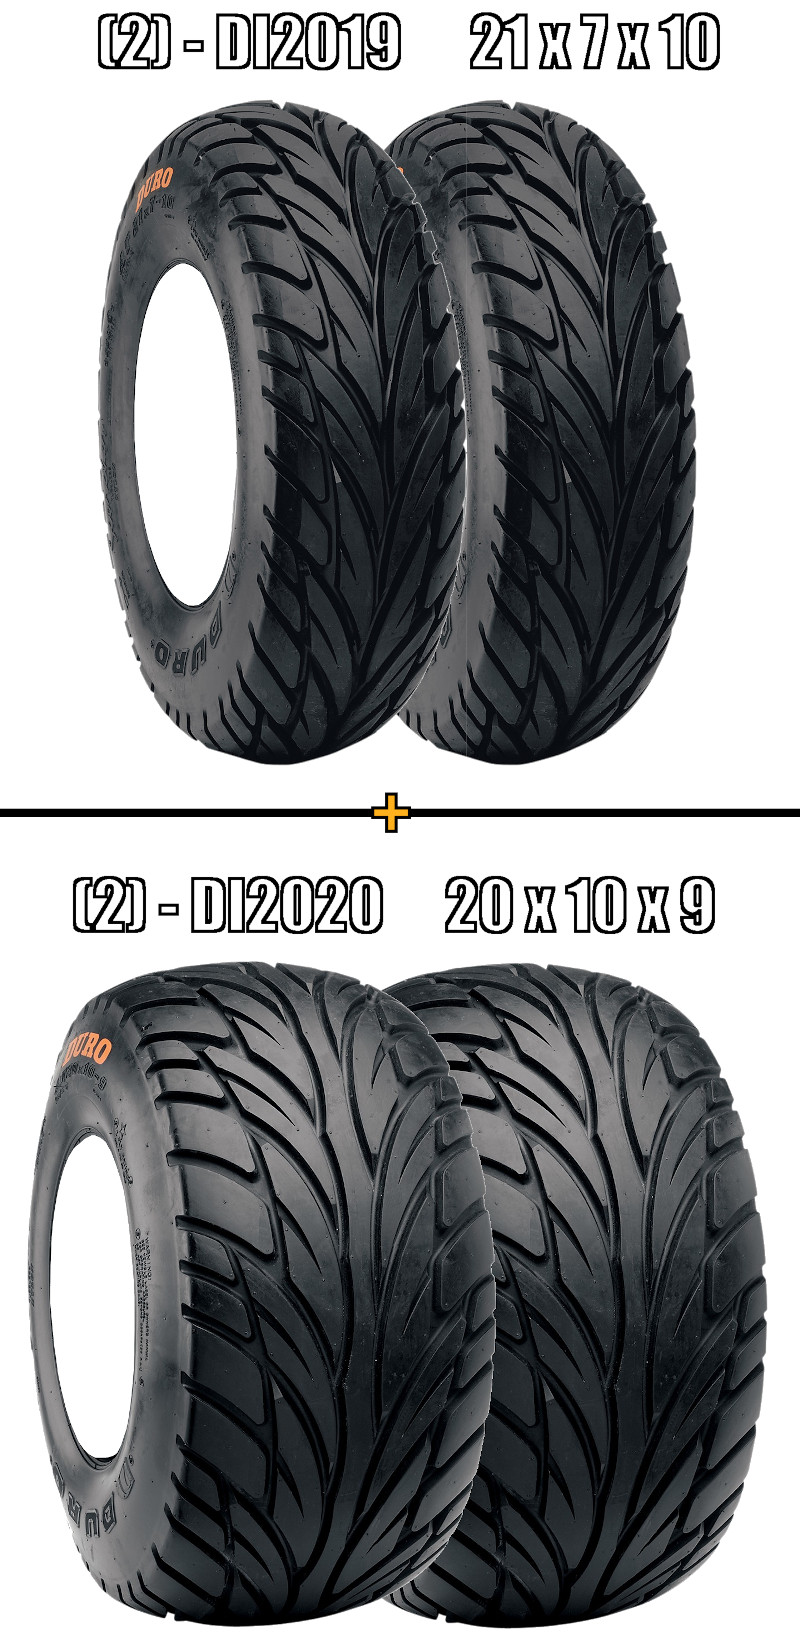 Complete Tire Kit - (2) DI2020 20x10x9 & (2) DI2019 21x7x10 - Click Image to Close